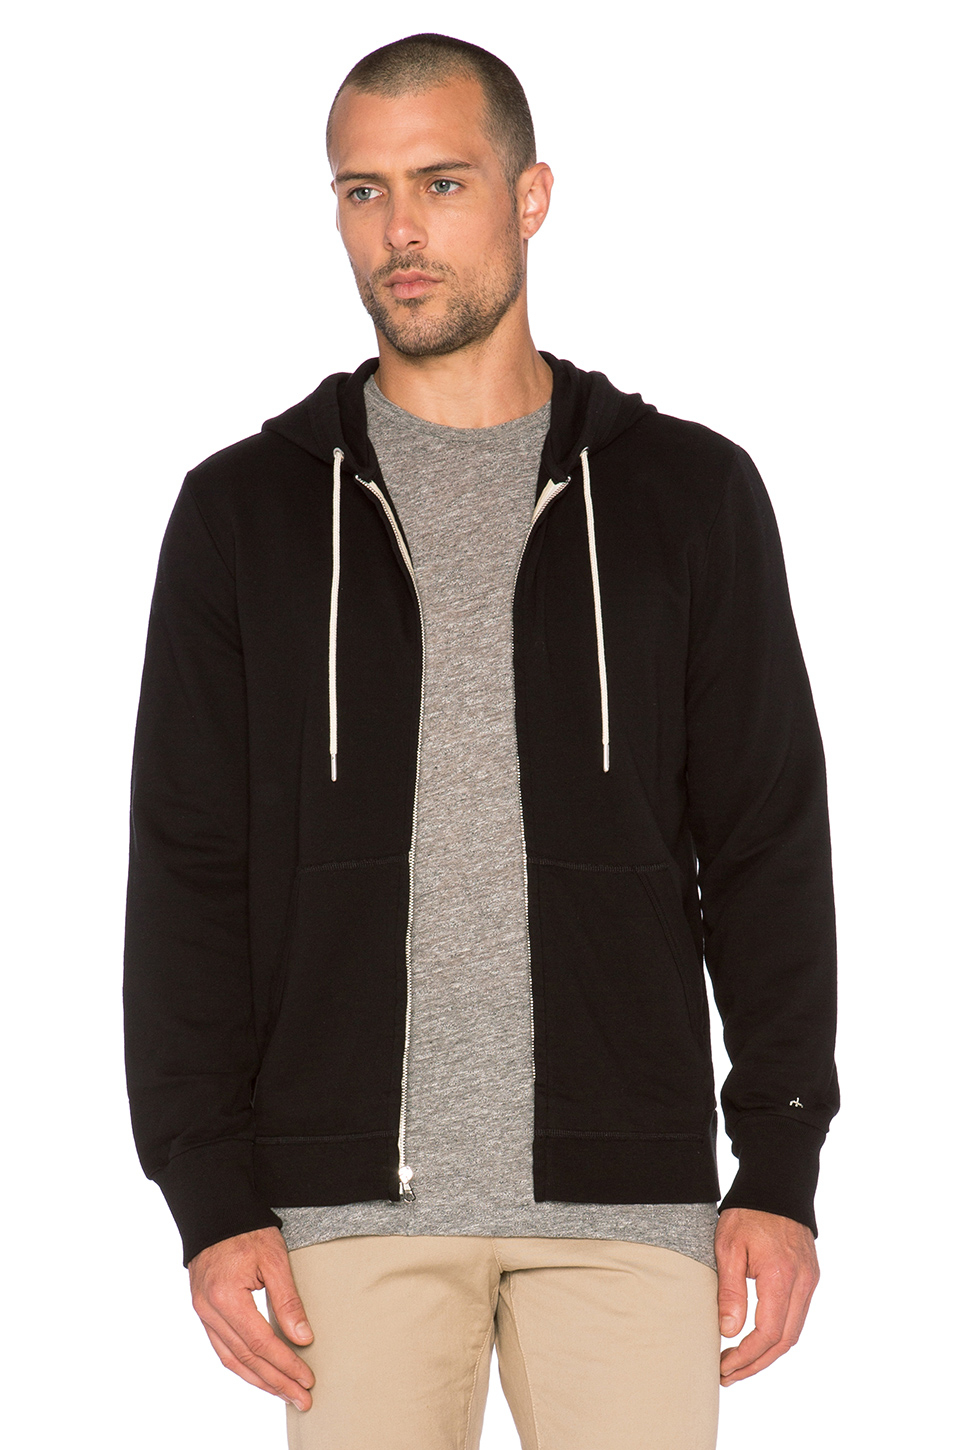 Rag & Bone Standard Issue Zip Hoodie in Black for Men - Lyst